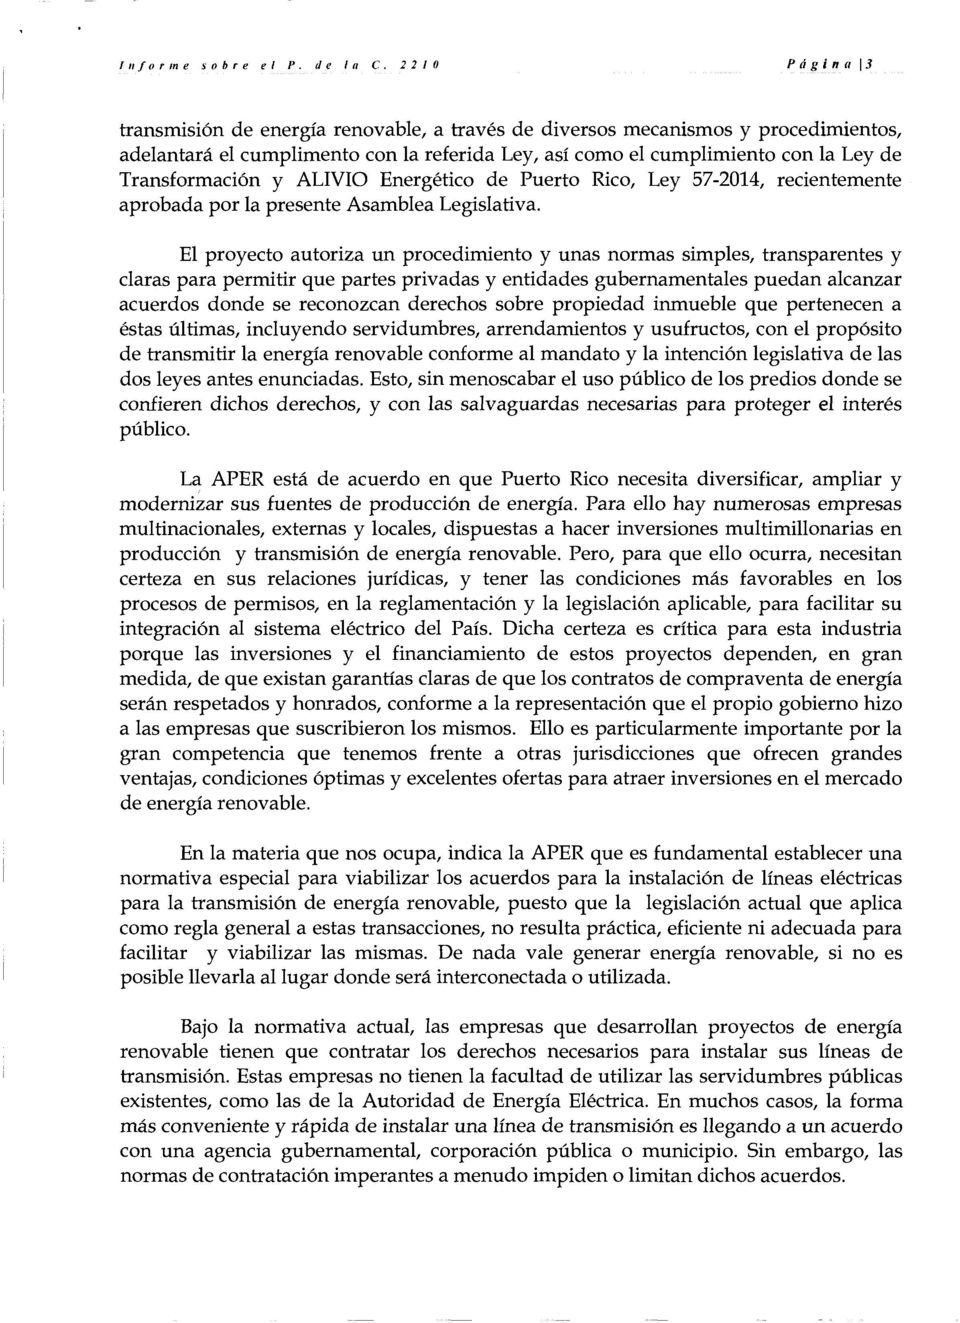 Transformaci6n y ALIVIO Energetico de Puerto Rico, Ley 57-2014, recientemente aprobada por la presente Asamblea Legislativa.